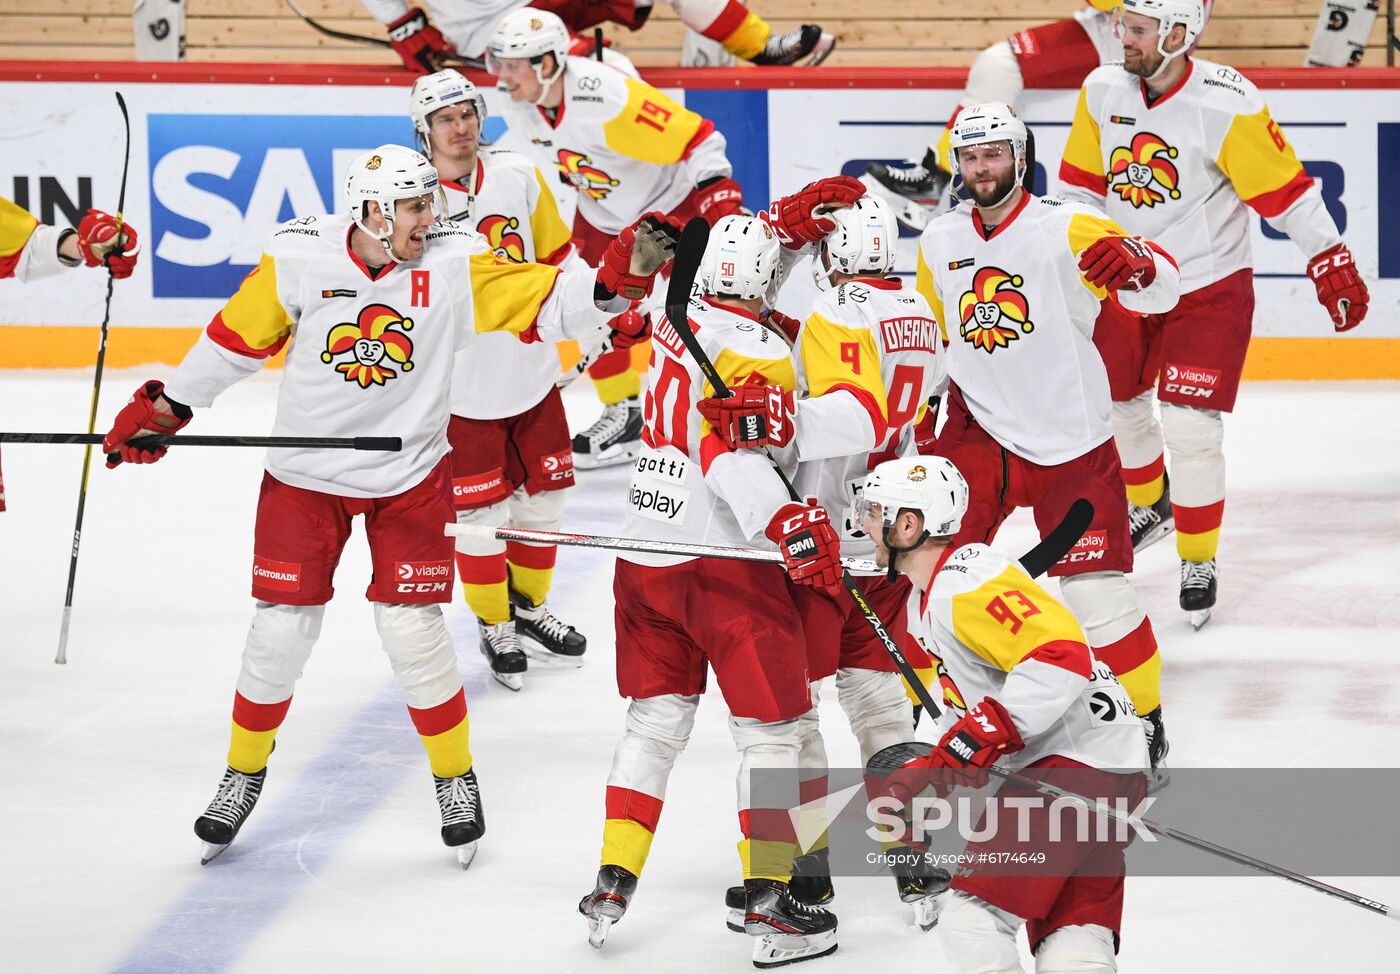 Russia Ice Hockey Avangard - Jokerit